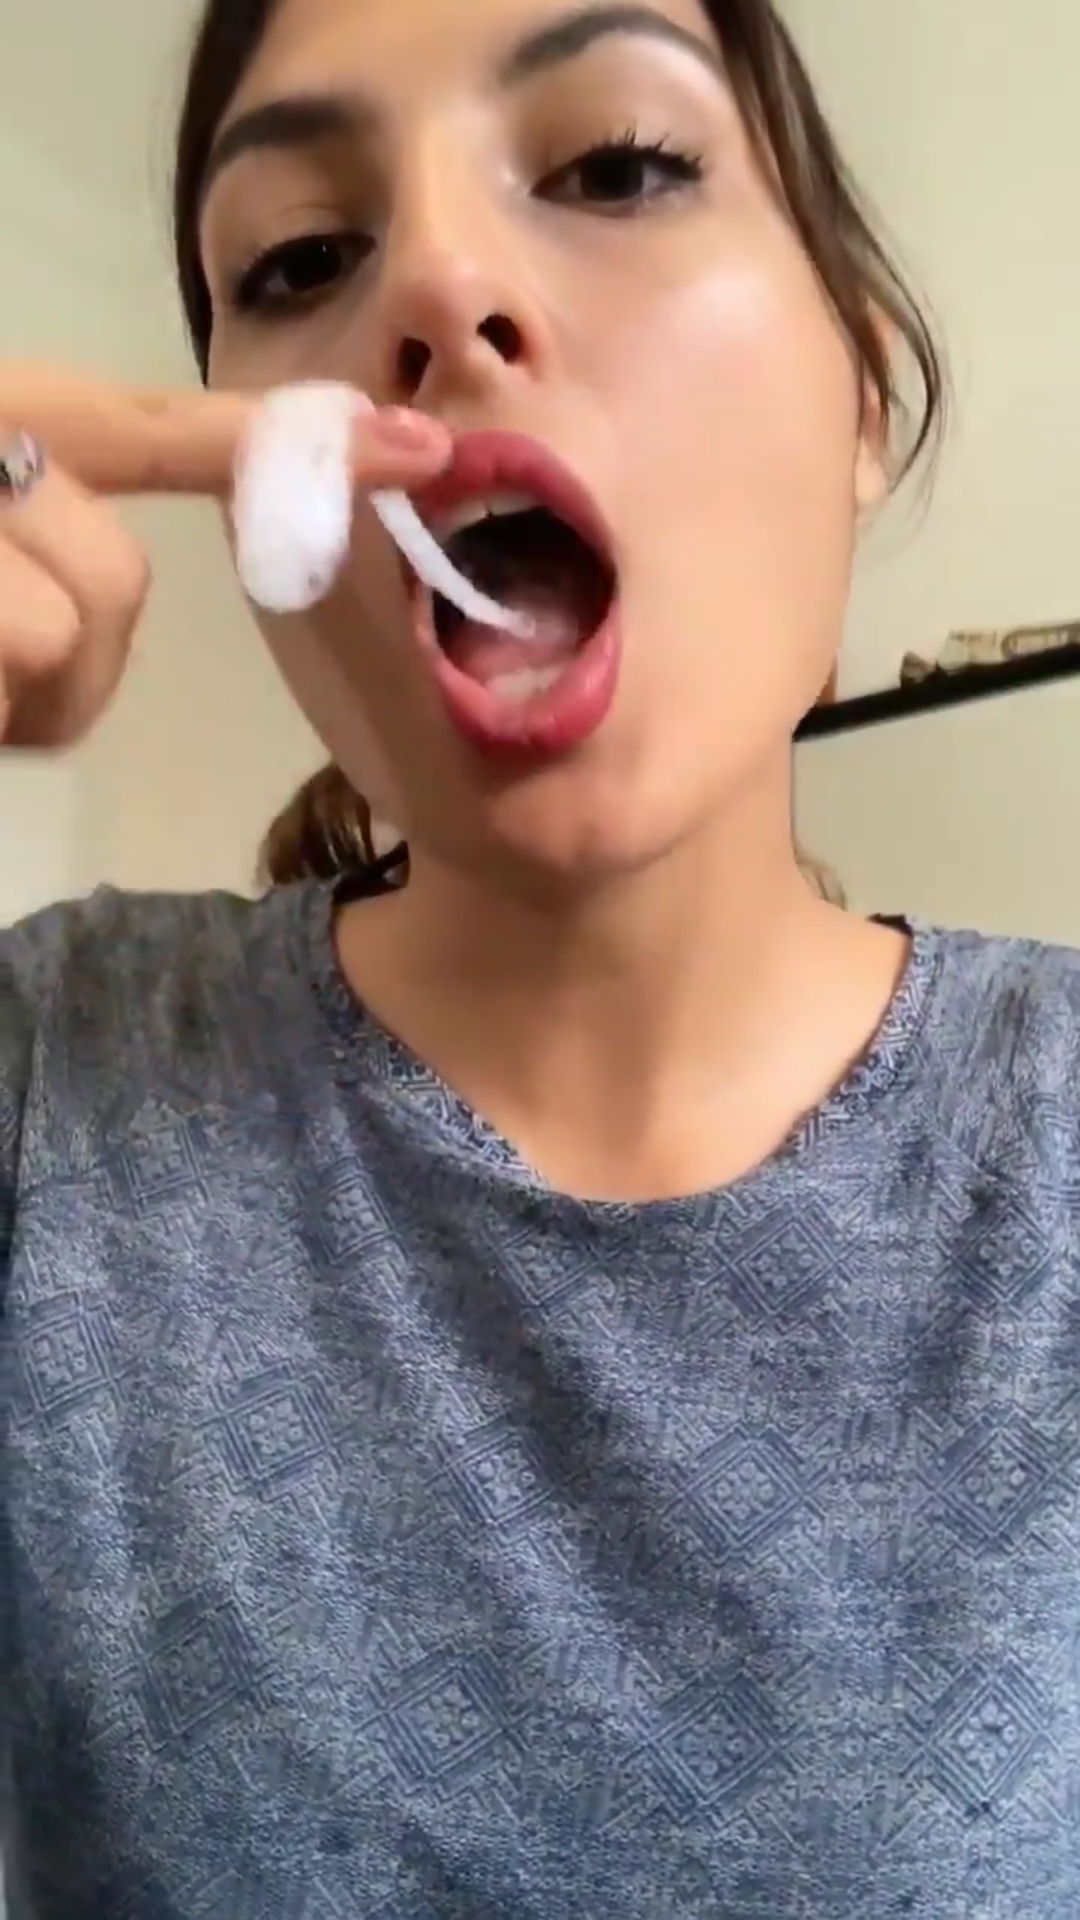 Spitting girl - video